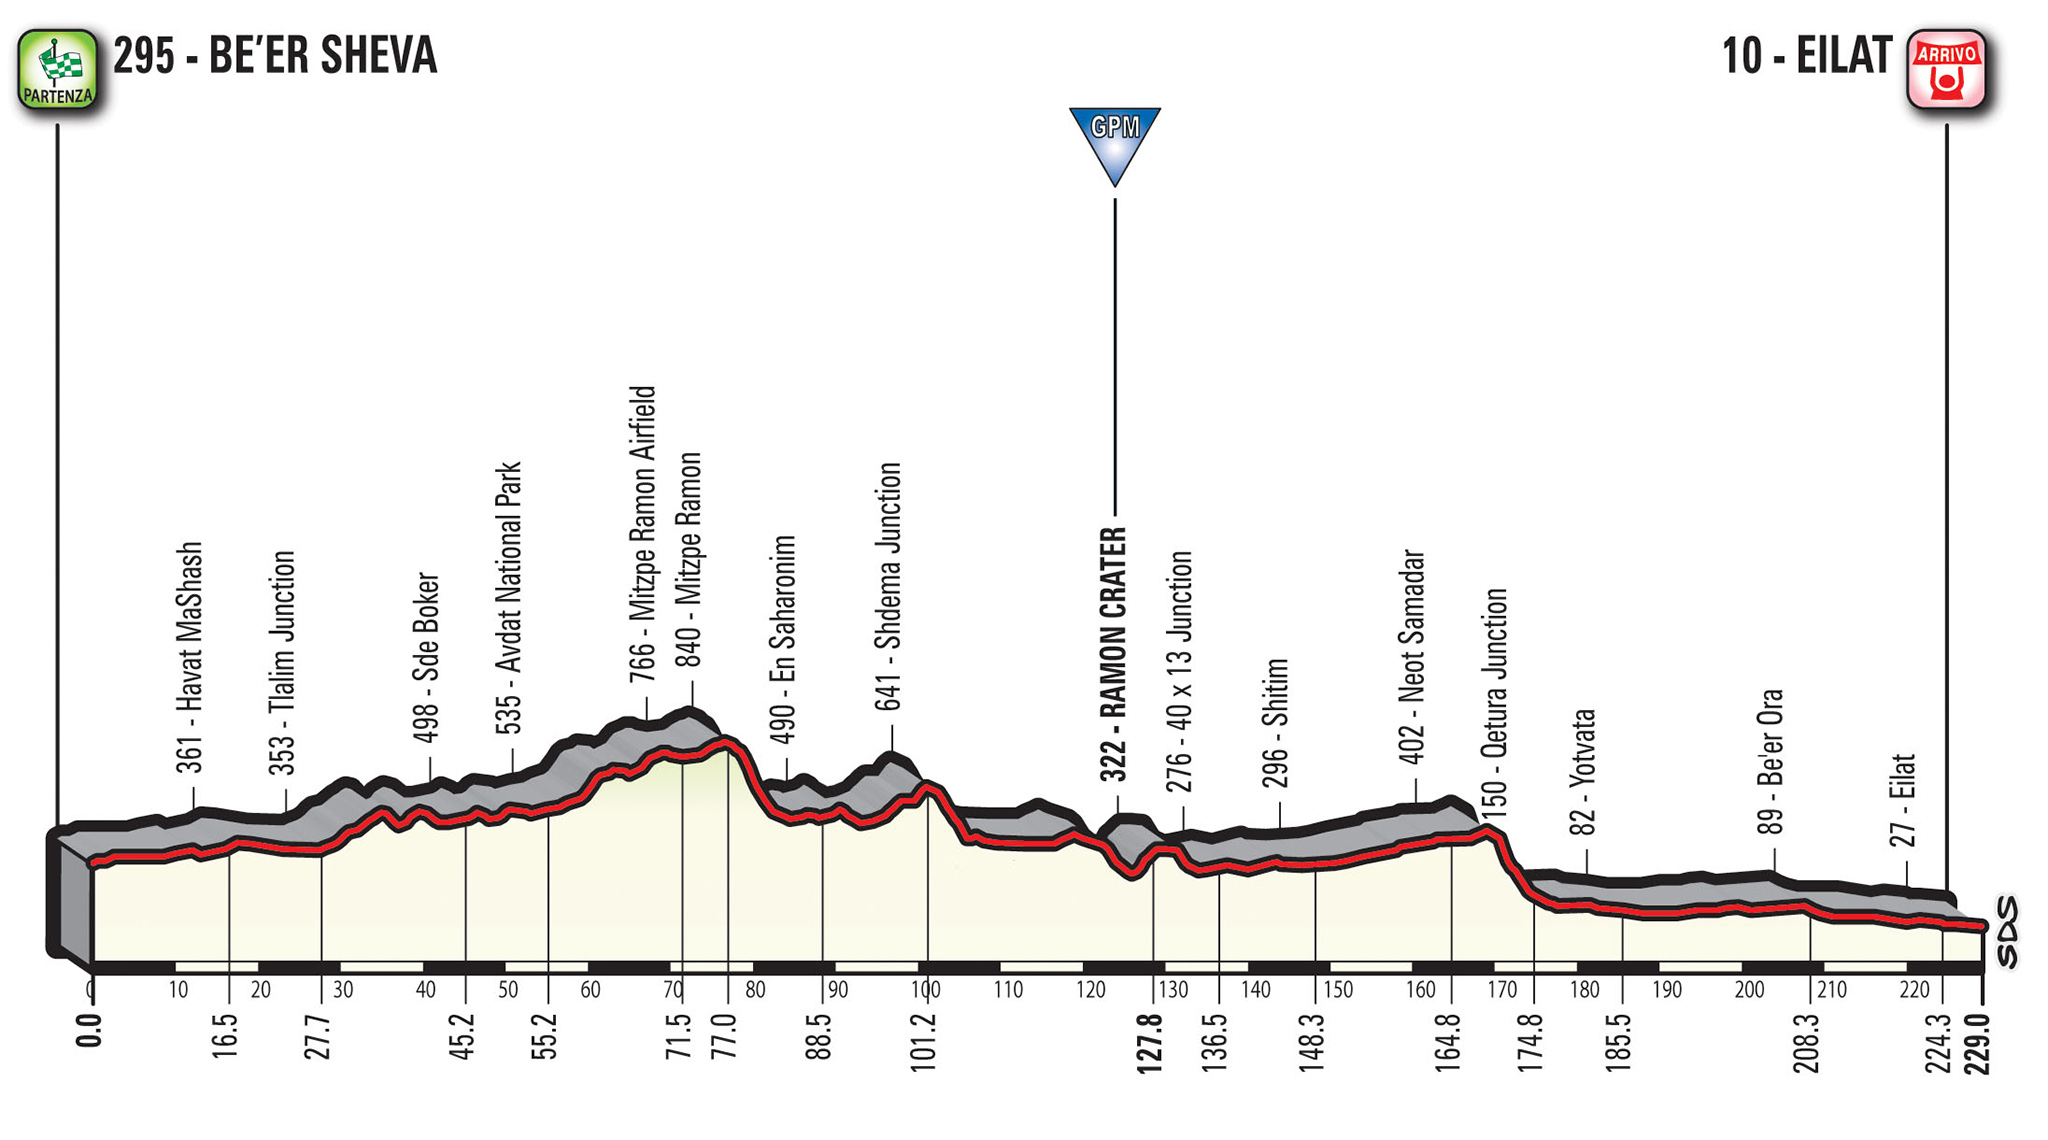 profil 3. etapu Giro d'Italia 2018